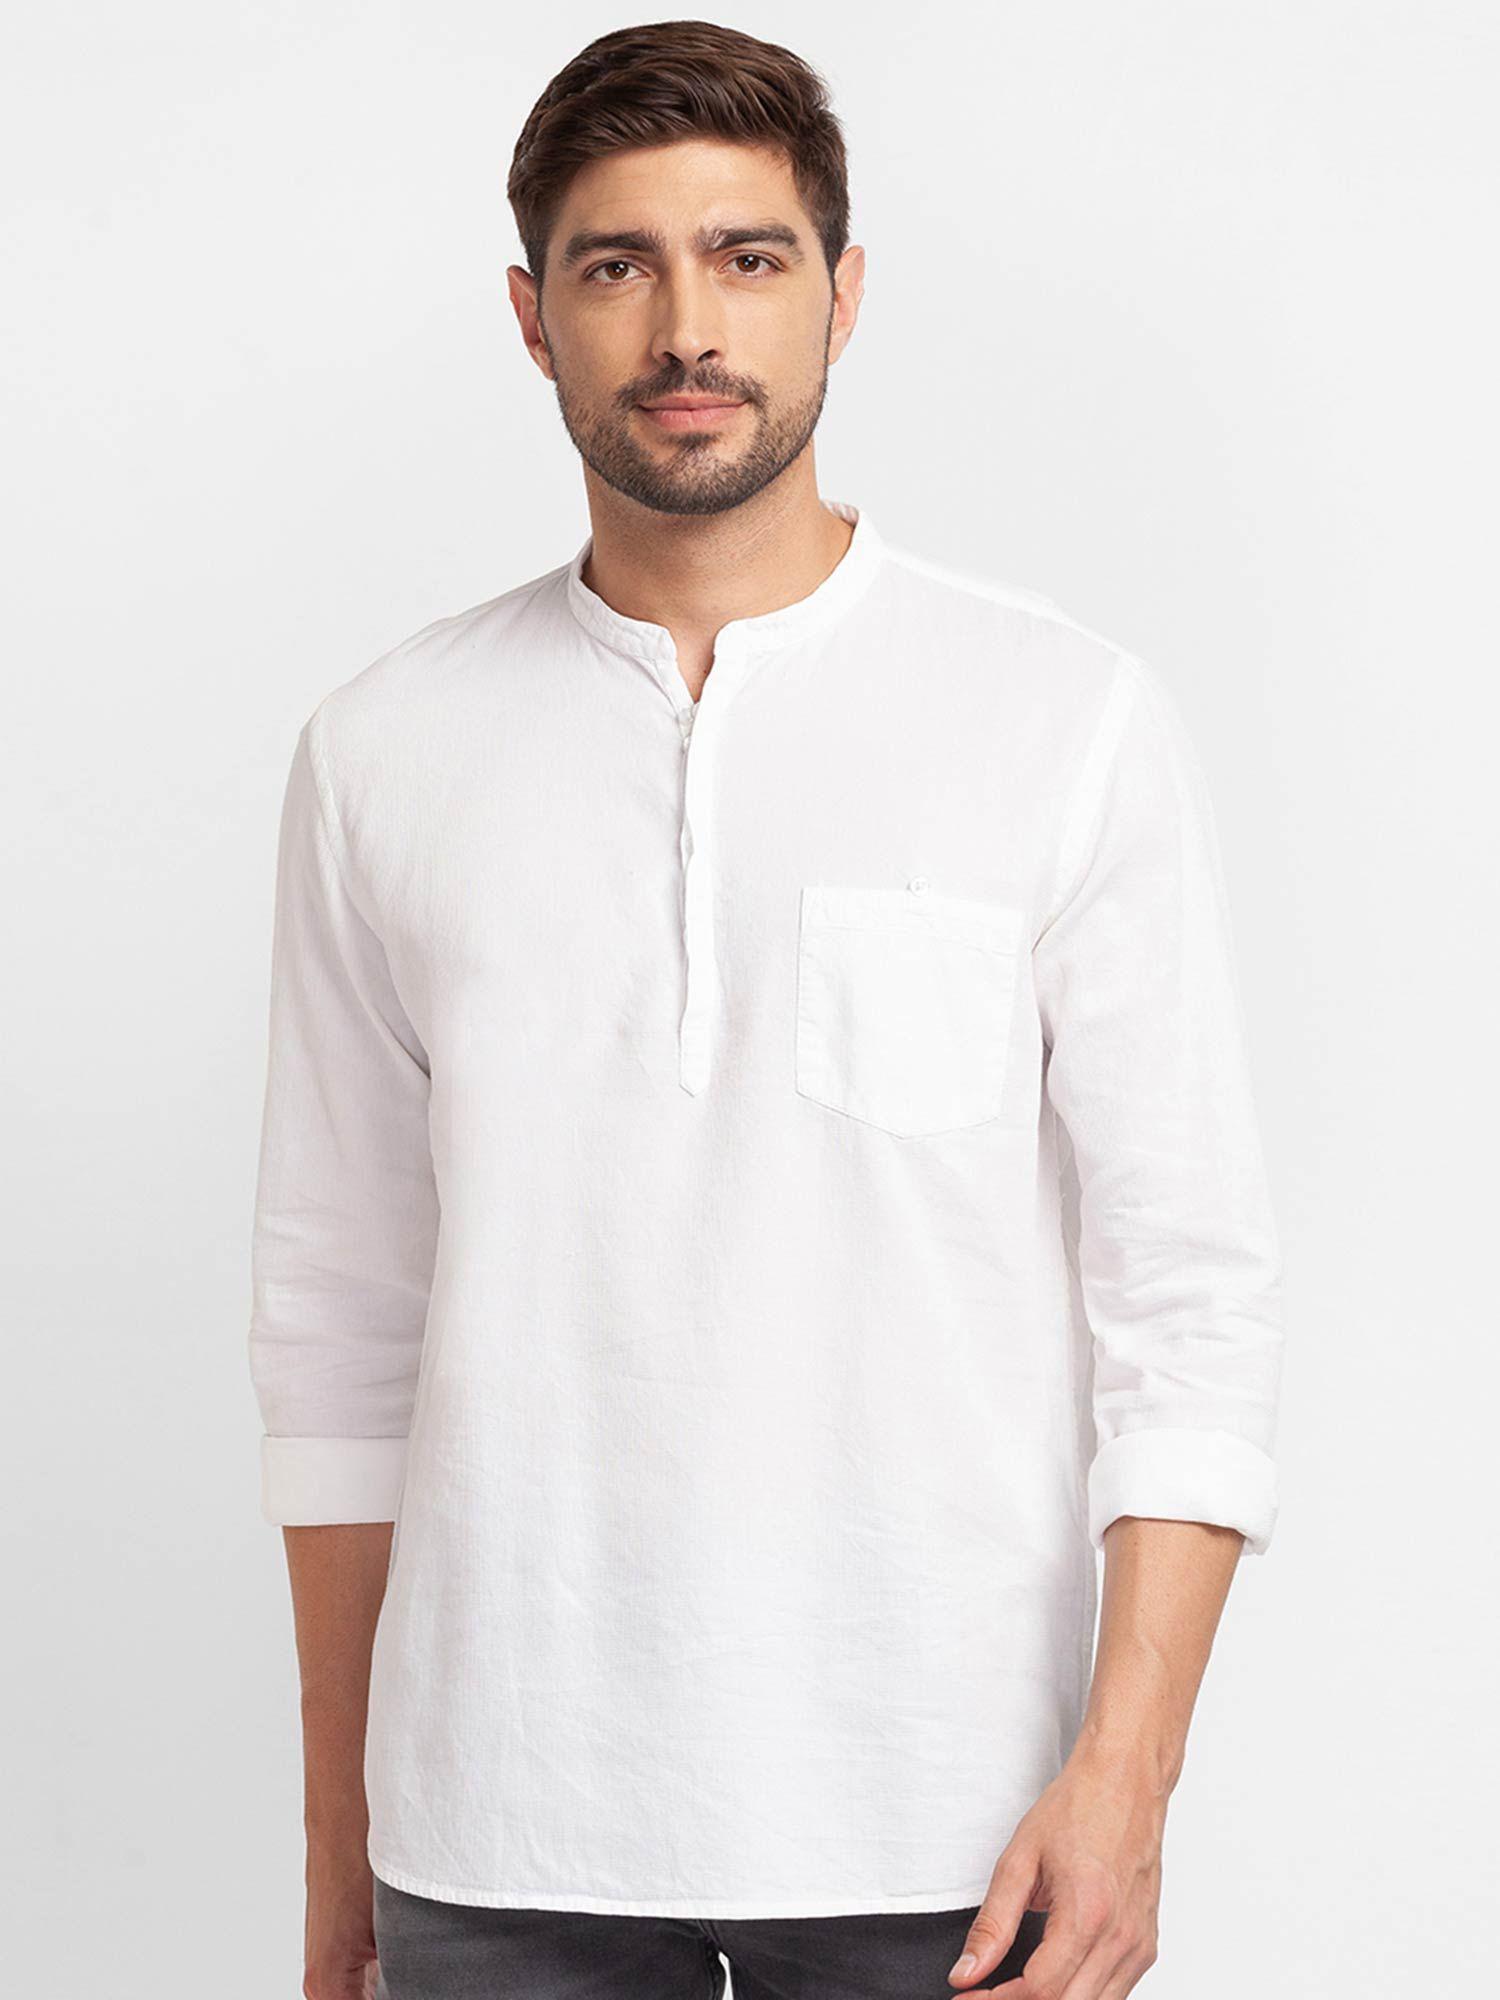 white cotton full sleeve plain shirt for men